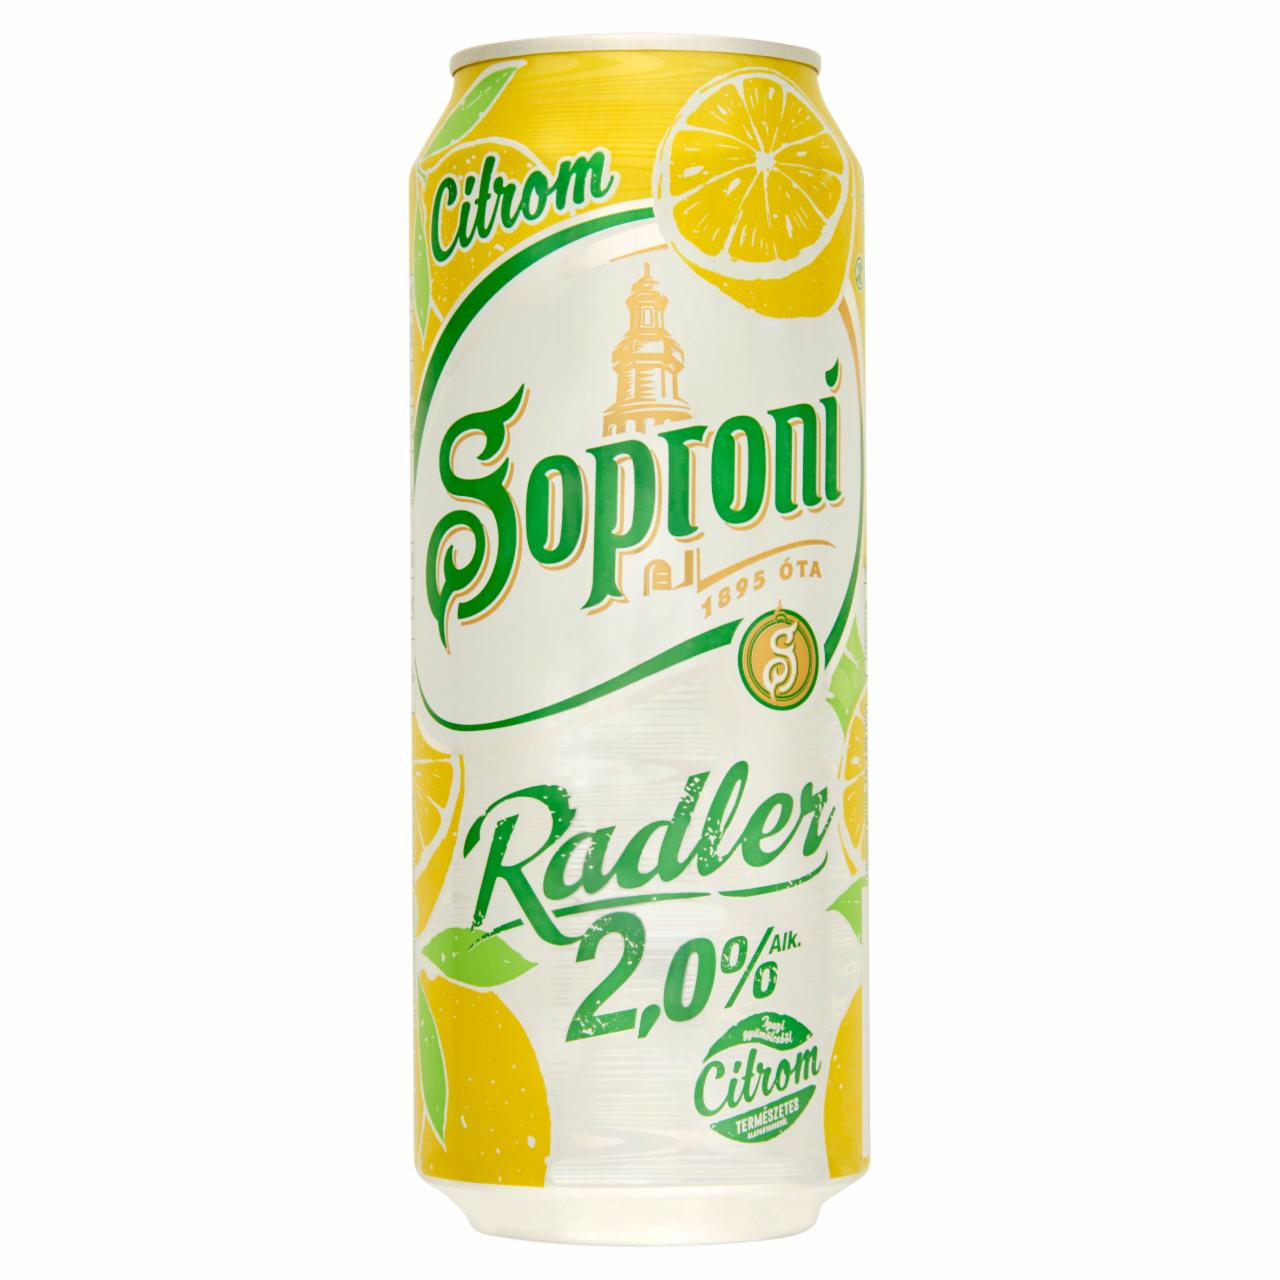 Képek - Soproni Radler citromos sörital 2% 0,5 l doboz